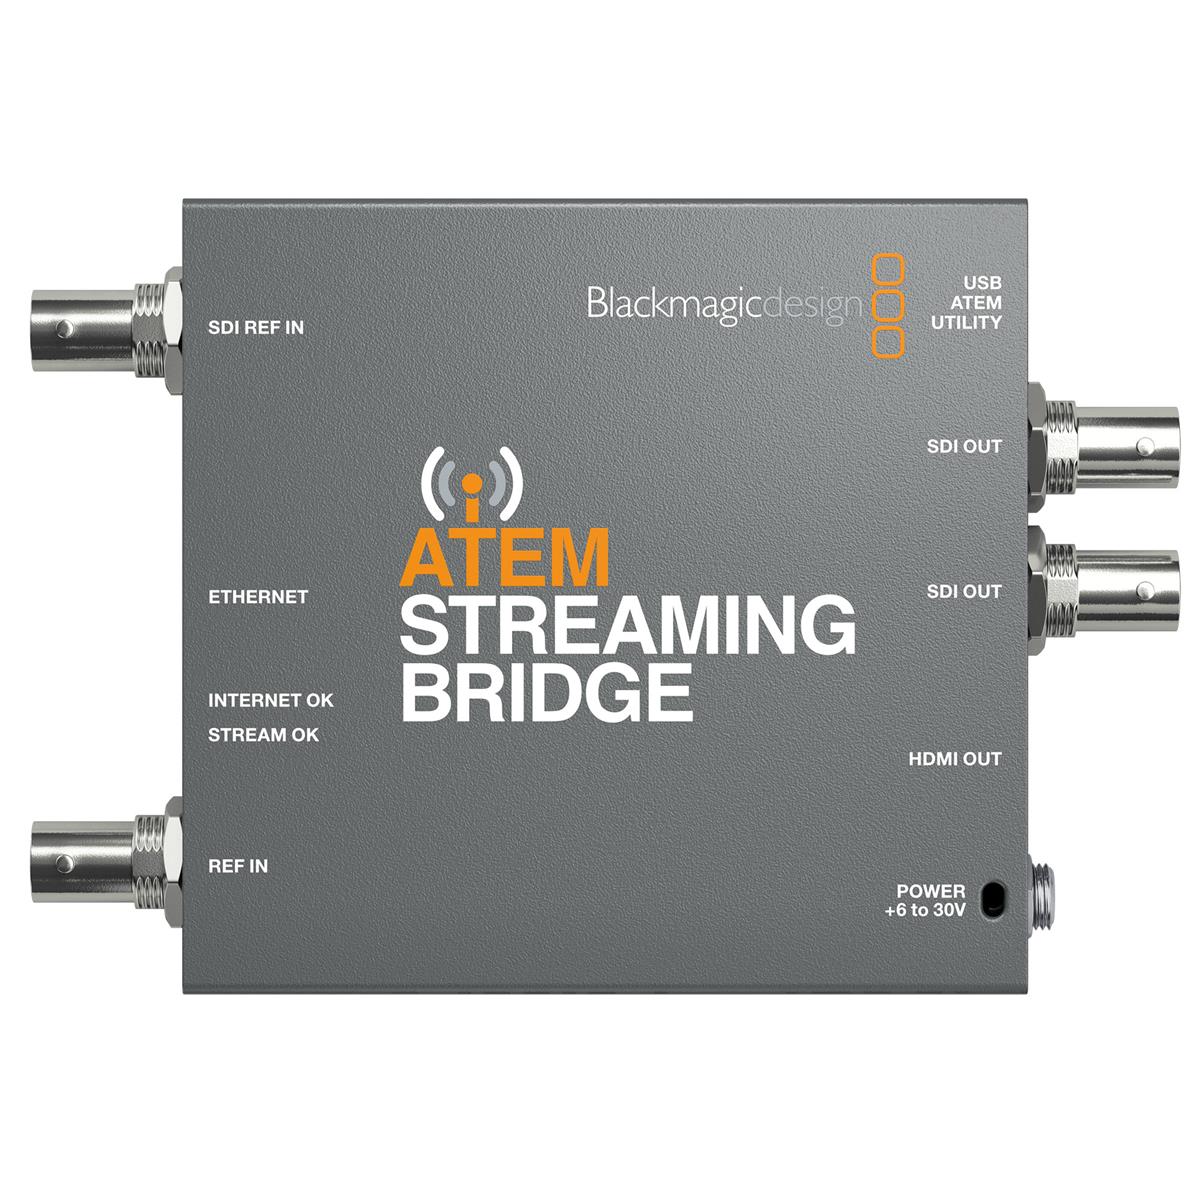 Image of Blackmagic Design ATEM Streaming Bridge